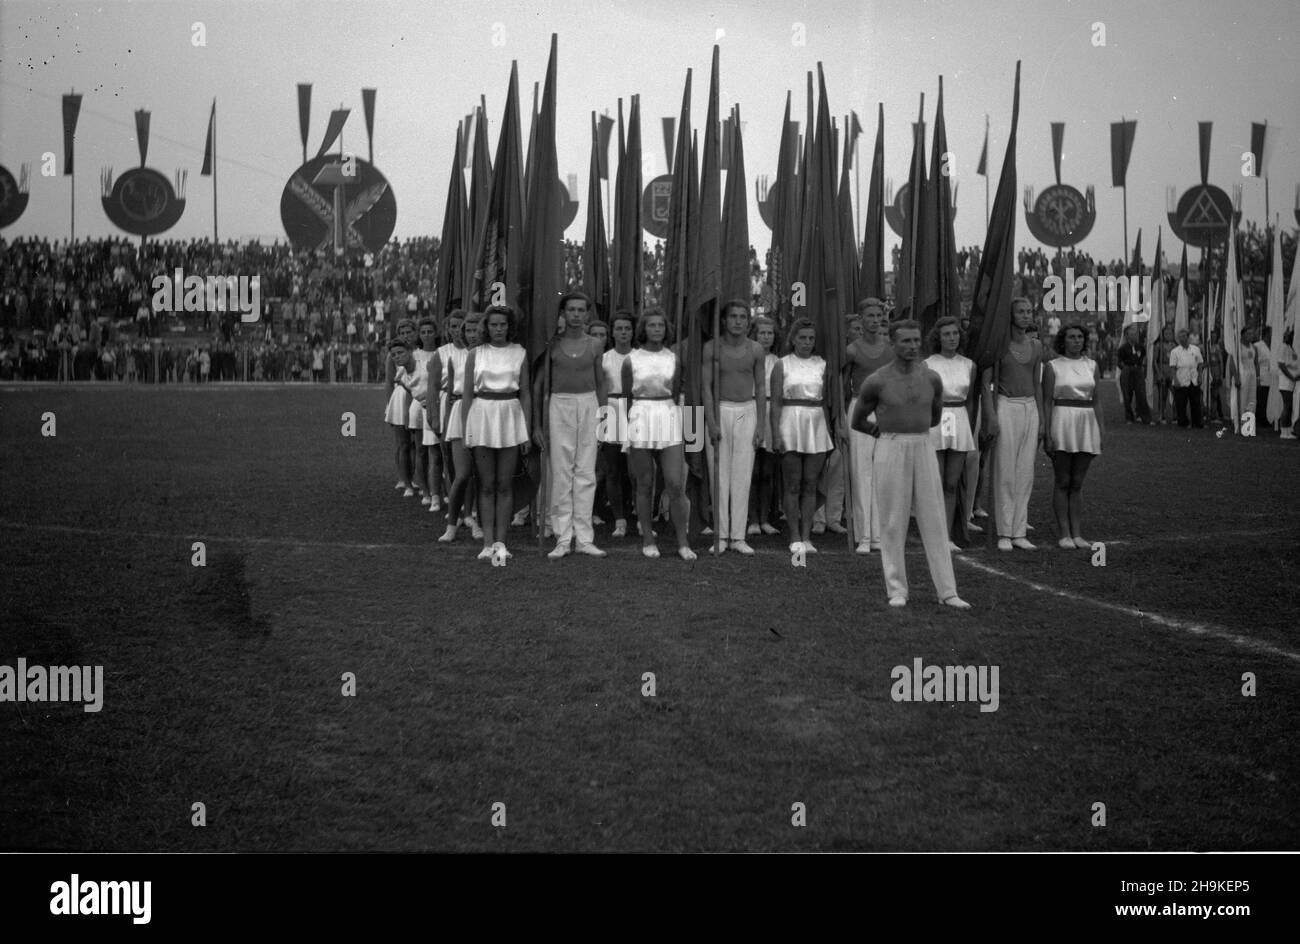 Warszawa, 1948-08-22. Pierwsze ogólnopolskie Igrzyska Sportowe Zwi¹zków Zawodowych (19-22.VIII) na stadionie Wojskowego Klubu Sportowego Legia, w których rywalizowali w 11 dyscyplinach reprezentanci 17 zwi¹zków zawodowych. Nz. uroczystoœæ zakoñczenia zawodów.  ka  PAP      Warsaw, Aug. 22, 1948. The first national Trade Union Sports Competition (Aug. 19-22) held at the stadium of the Military Sports Club Legia. The event brought together representatives of 17 trade unions who competed in 11 disciplines. Pictured: the competition conclusion ceremony.  ka  PAP Stock Photo